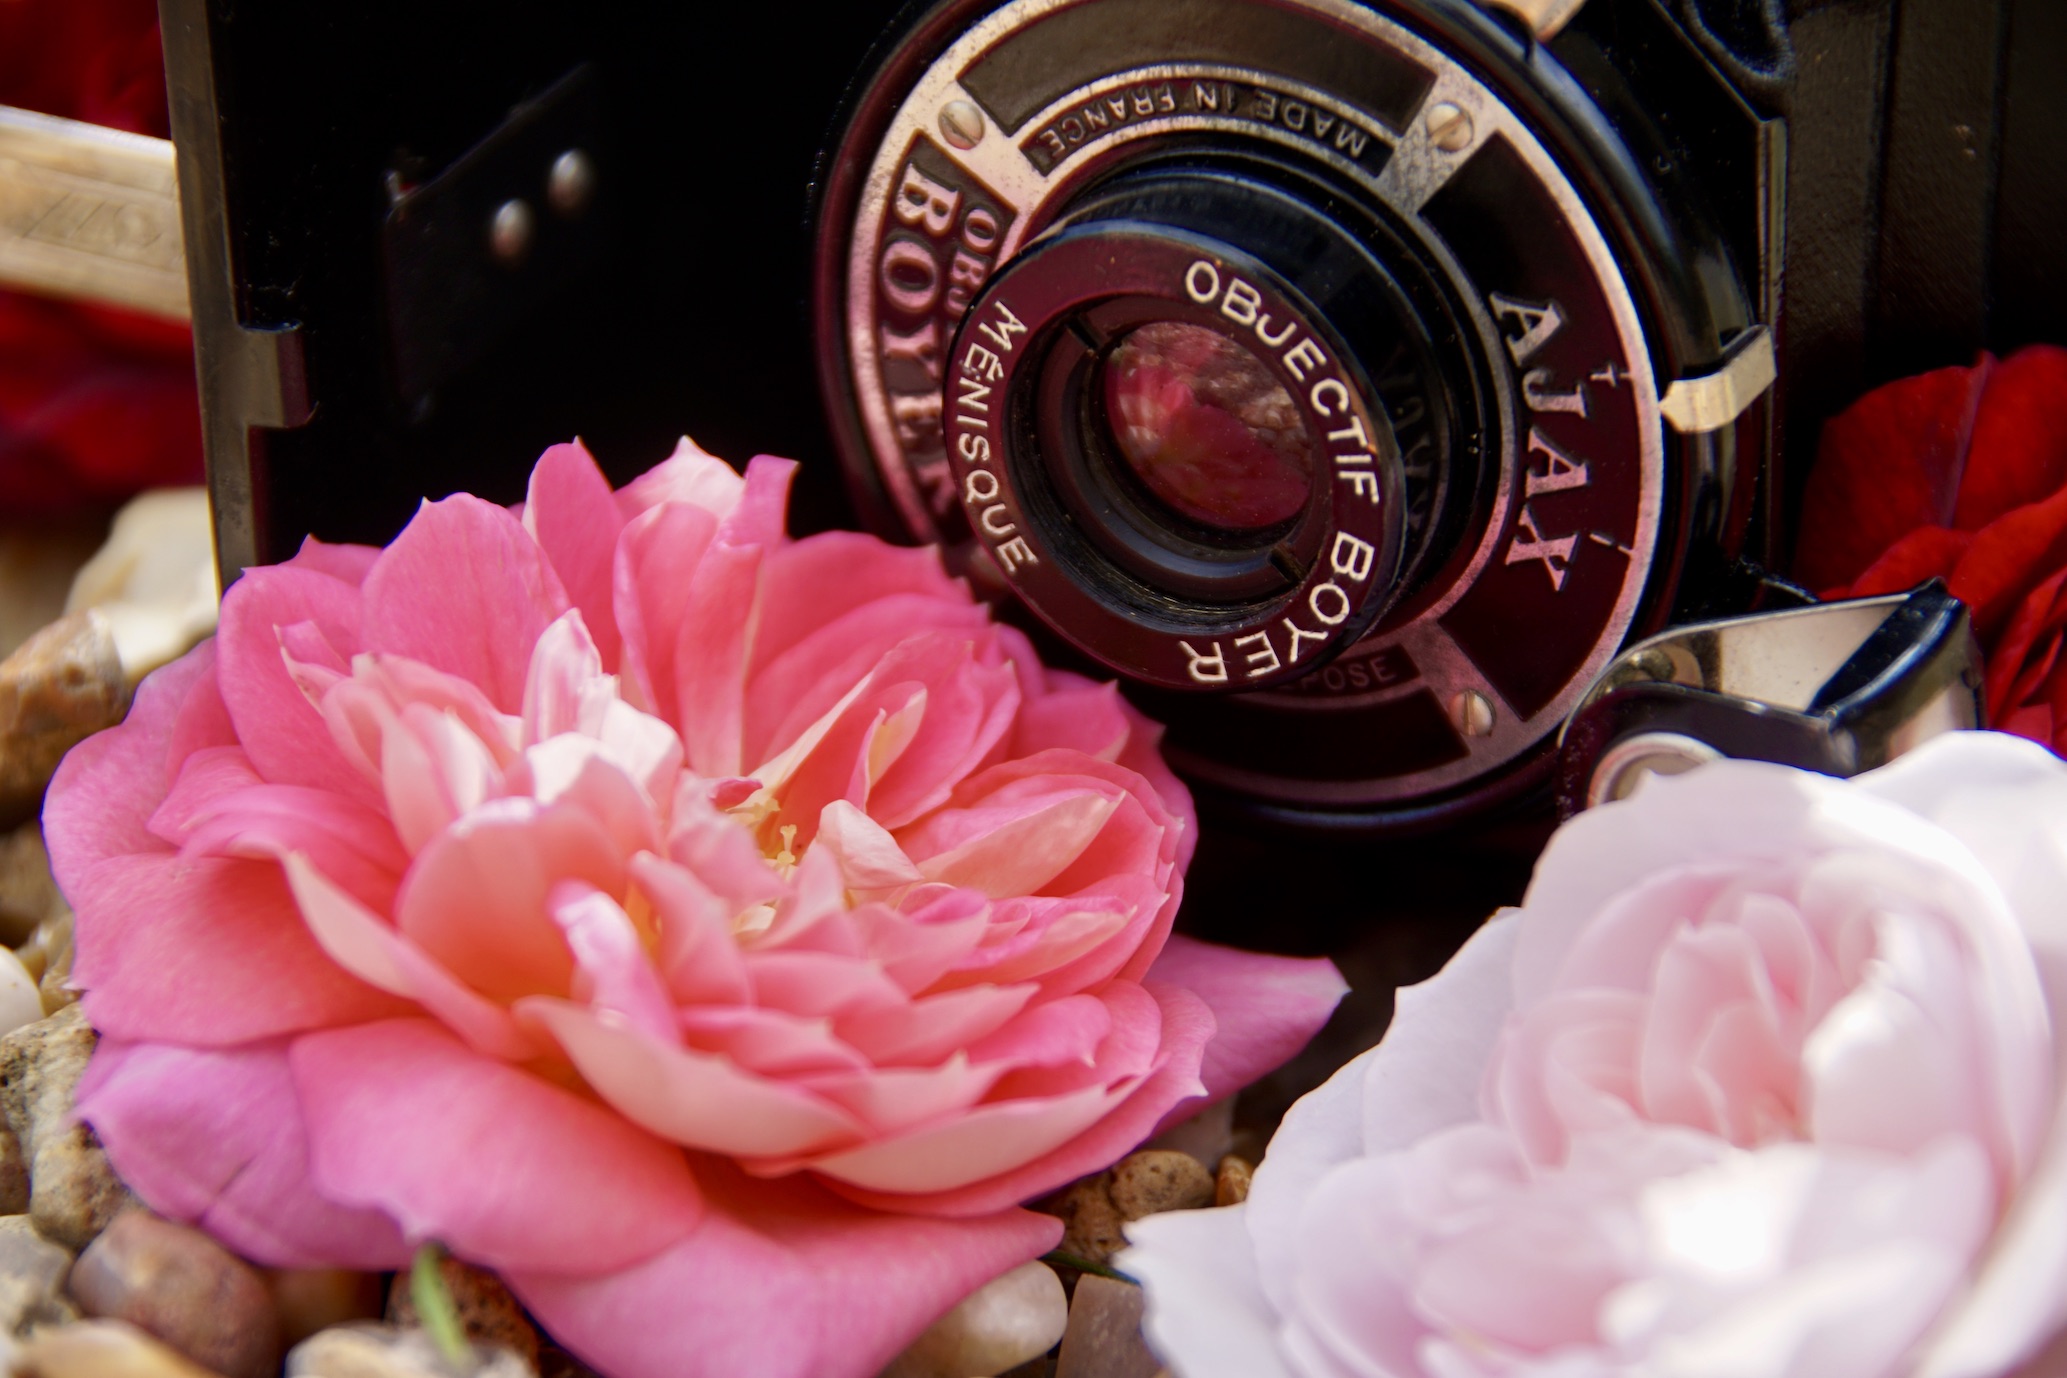 Amateurs De Photos de jardins, laissez-vous inspirer par les Roses Guillot®